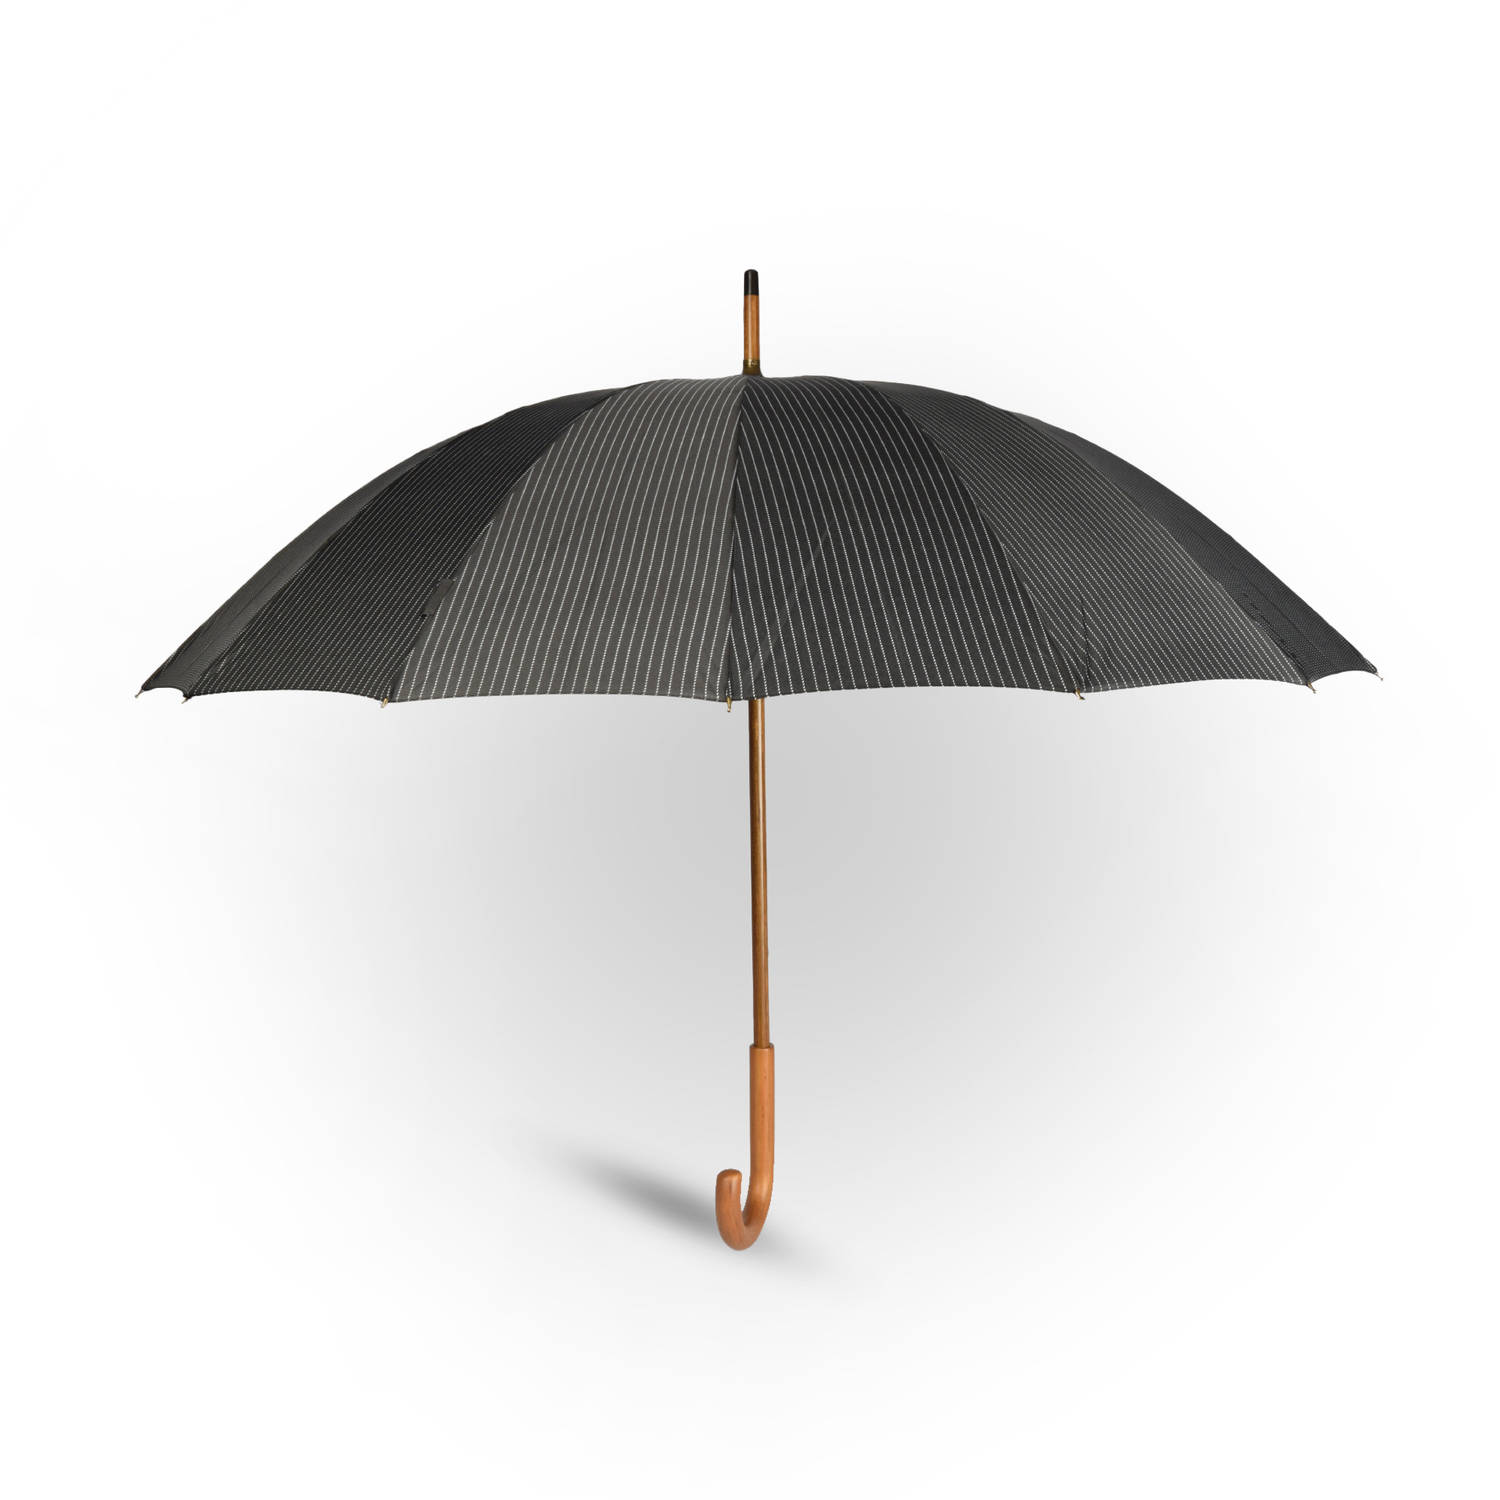 Grote Grijze Paraplu met Houten Handgreep | Windproof - Ø102cm | Unisex Pin Stripe Design - Polyester Pongee & Fiberglass